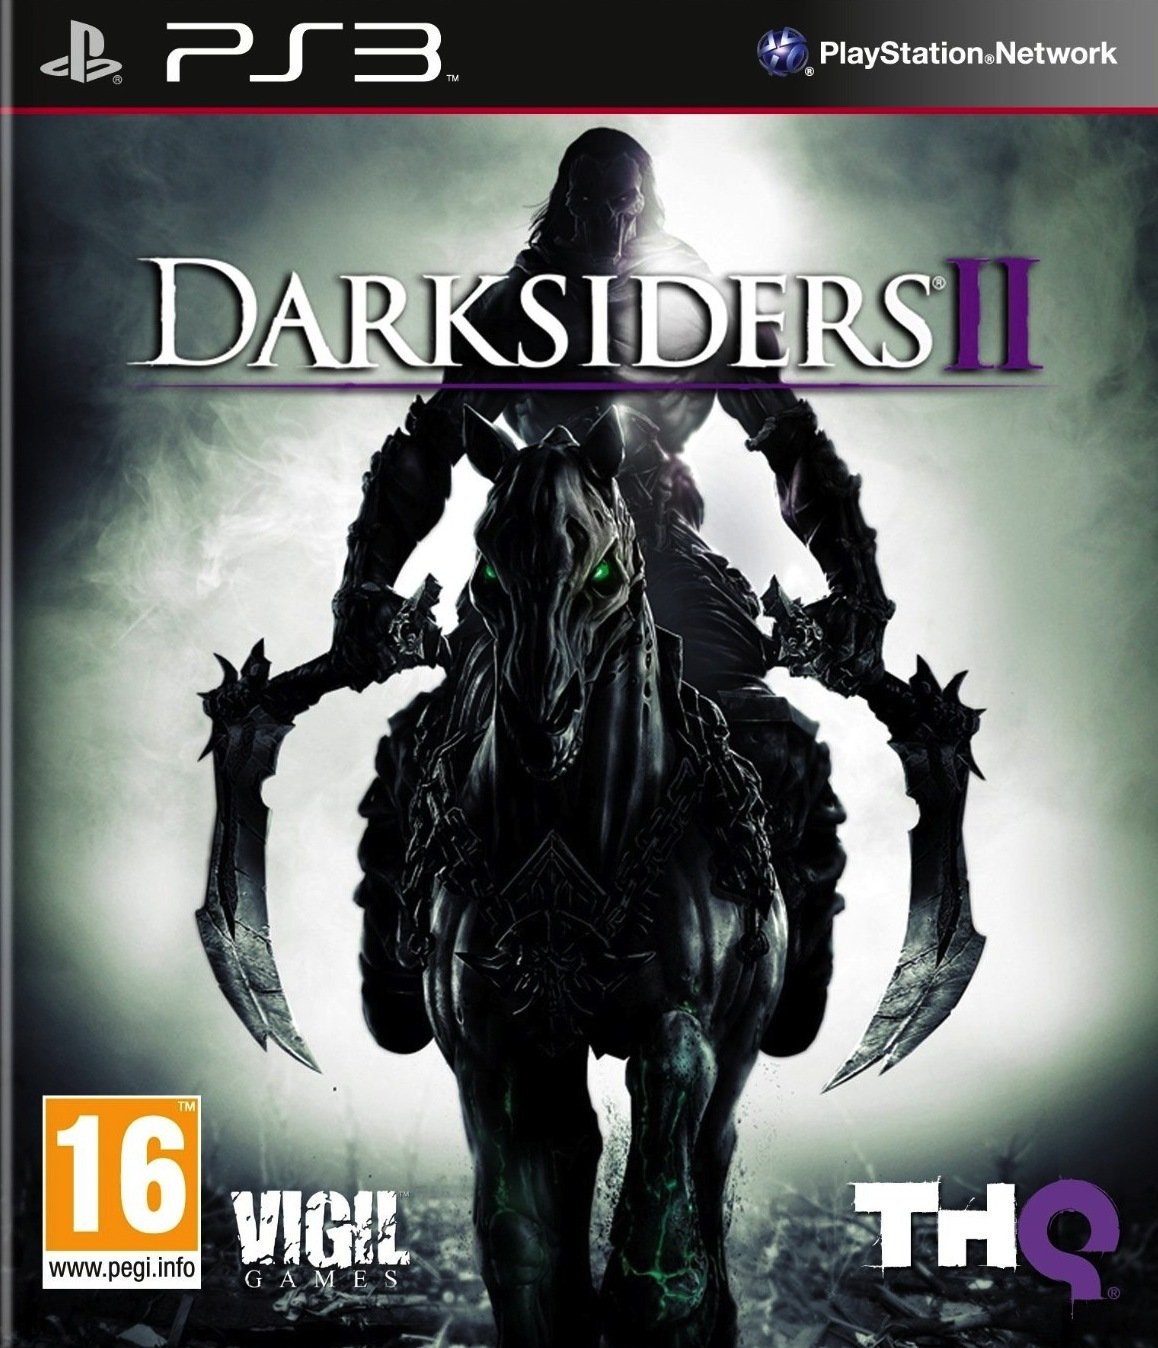 Caratula de Darksiders II para PlayStation 3